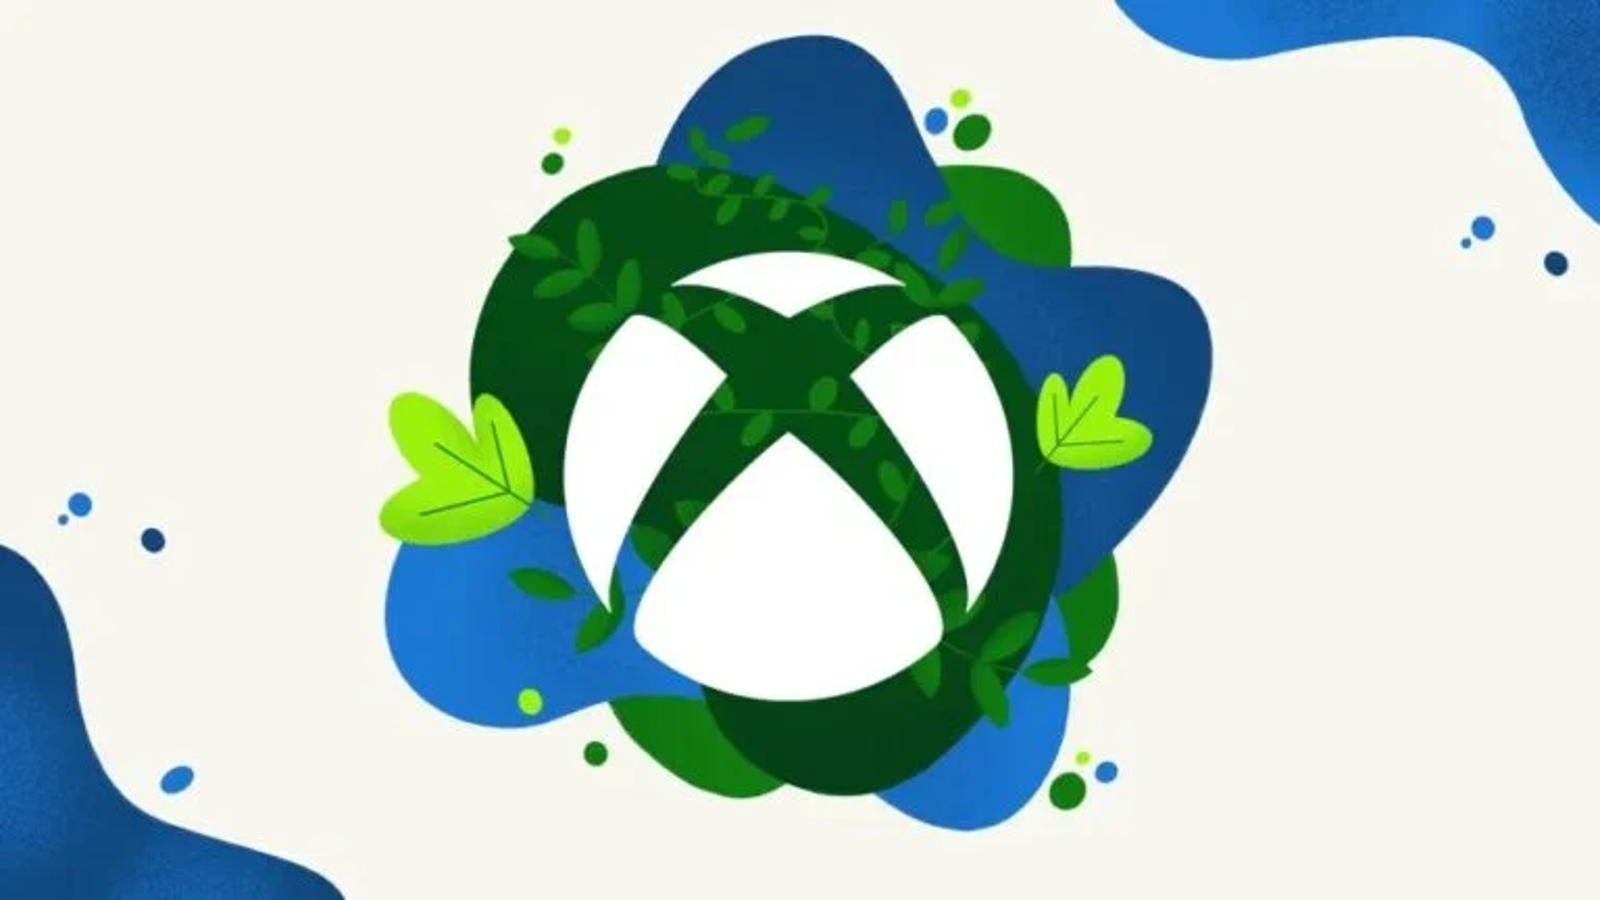 Xbox Game Pass: atualizações de jogos para Junho de 2023